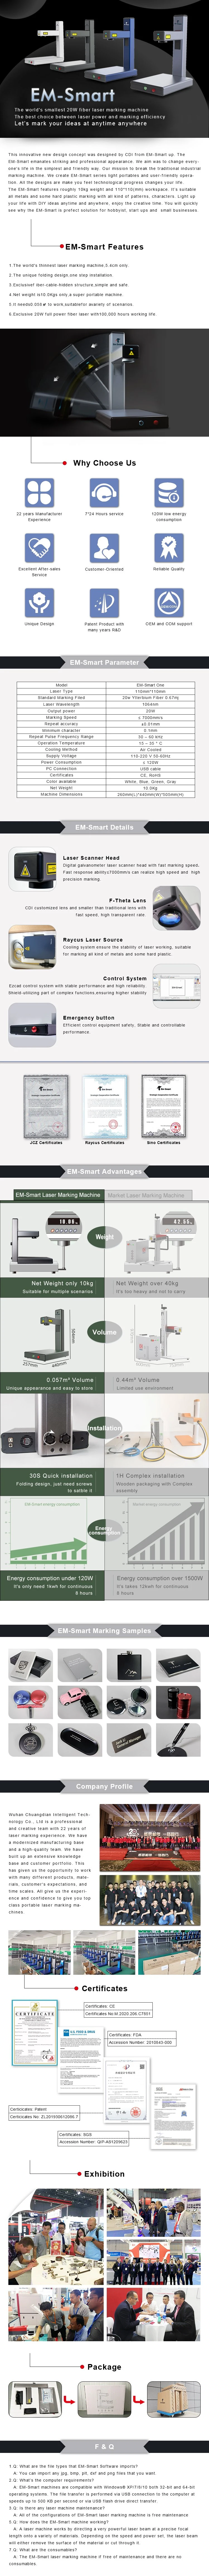 Laser Marking Machine 20W Mini Fiber Laser Marking Engraving Cutting Machine for Advertising Printing